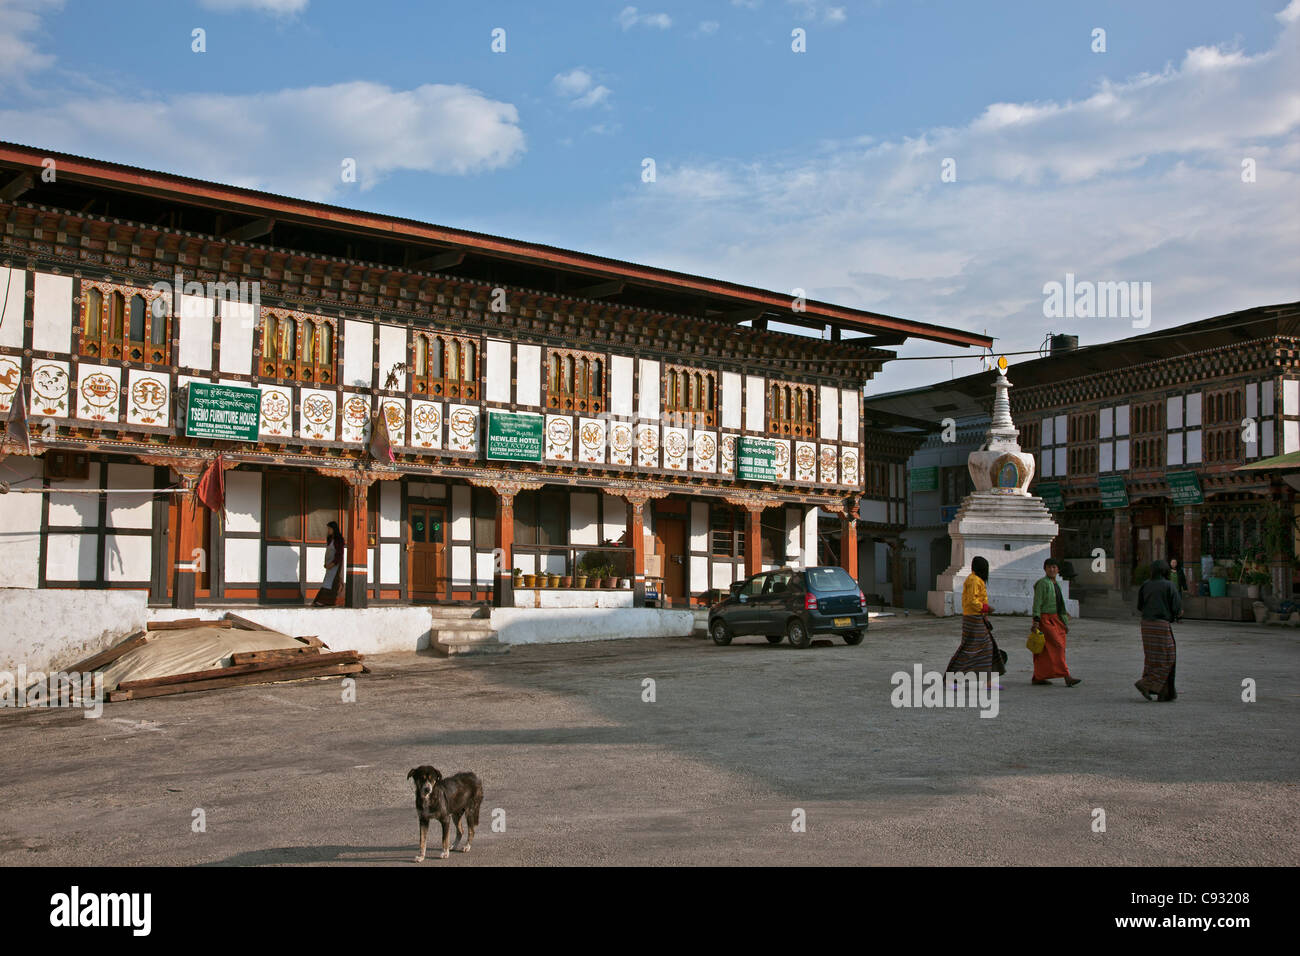 La cittadina collinare di Mongar mostra edifici con il distintivo e decorativi in stile architettonico del Regno del Bhutan. Foto Stock